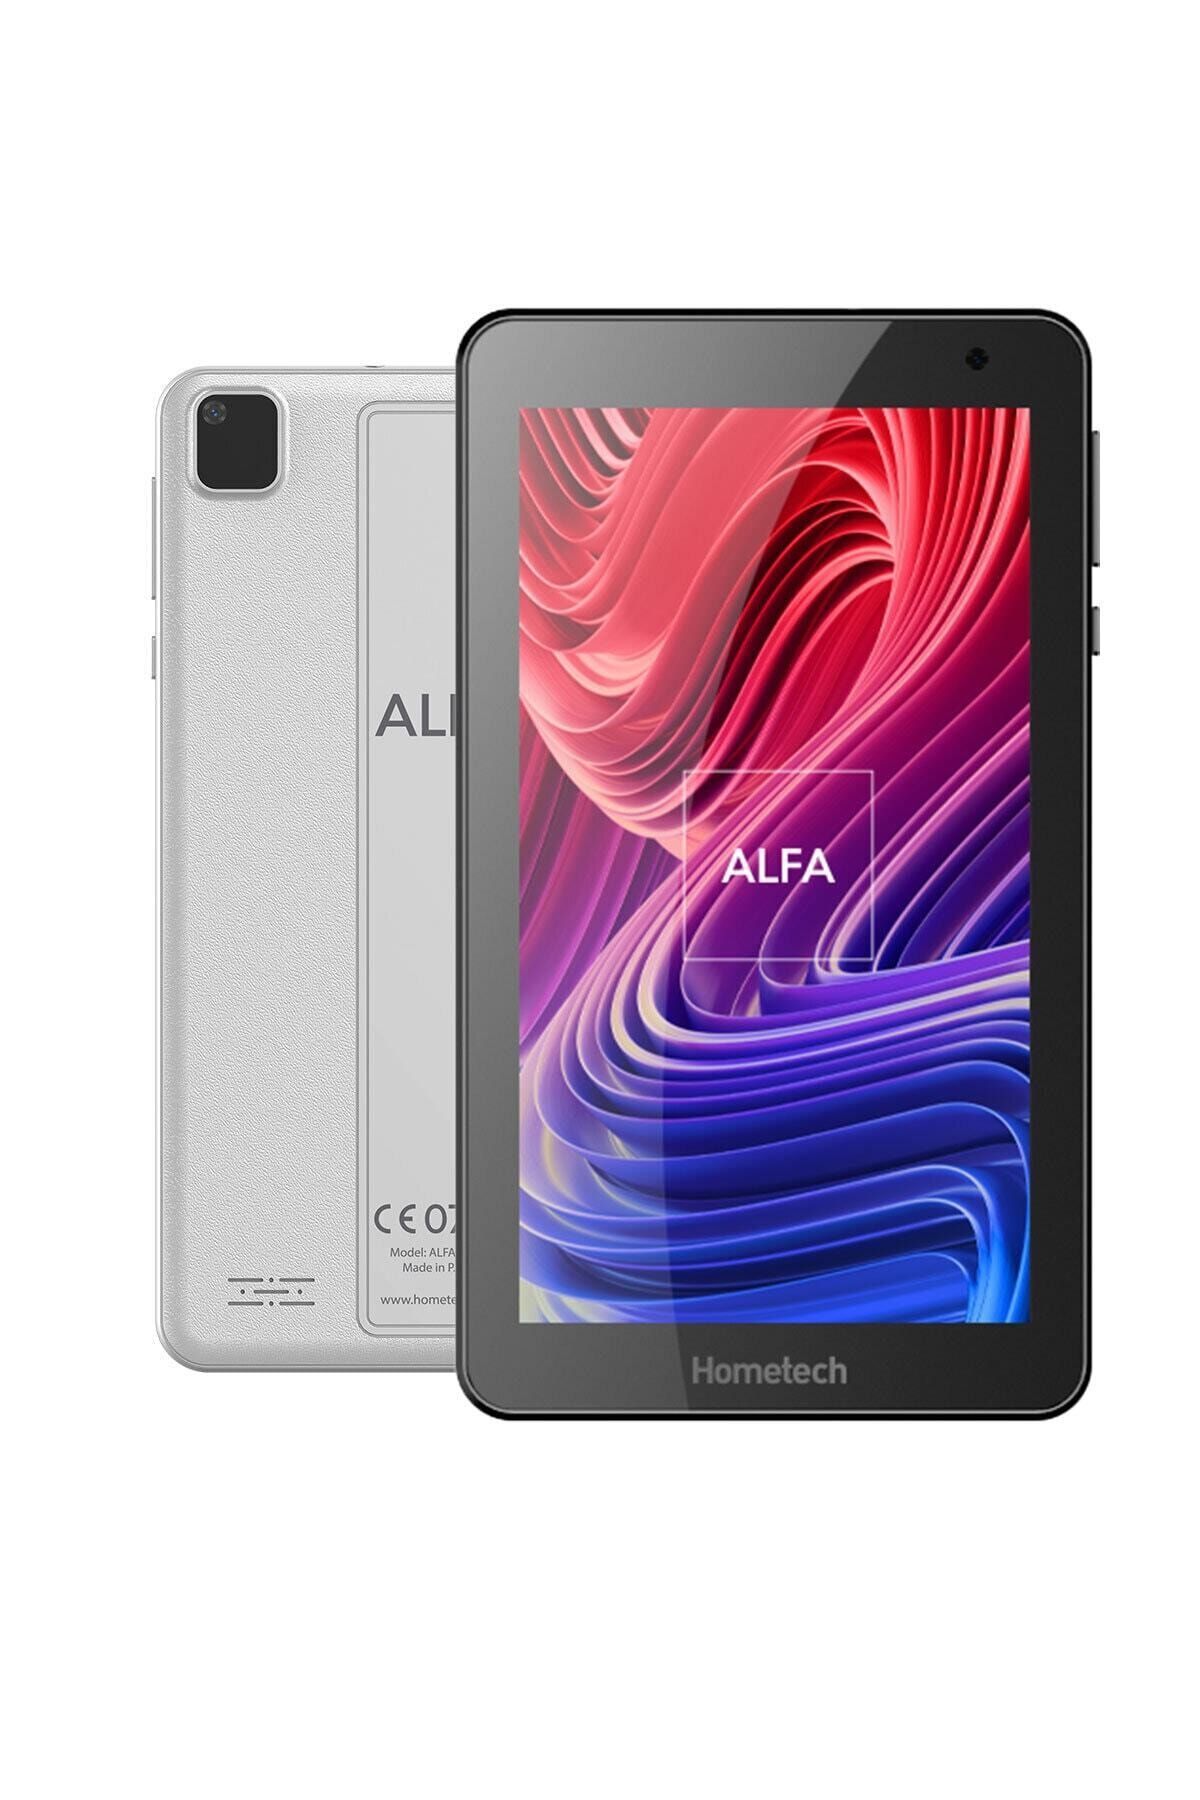 Hometech Alfa 7 Mrc 32gb 7mrc Tablet